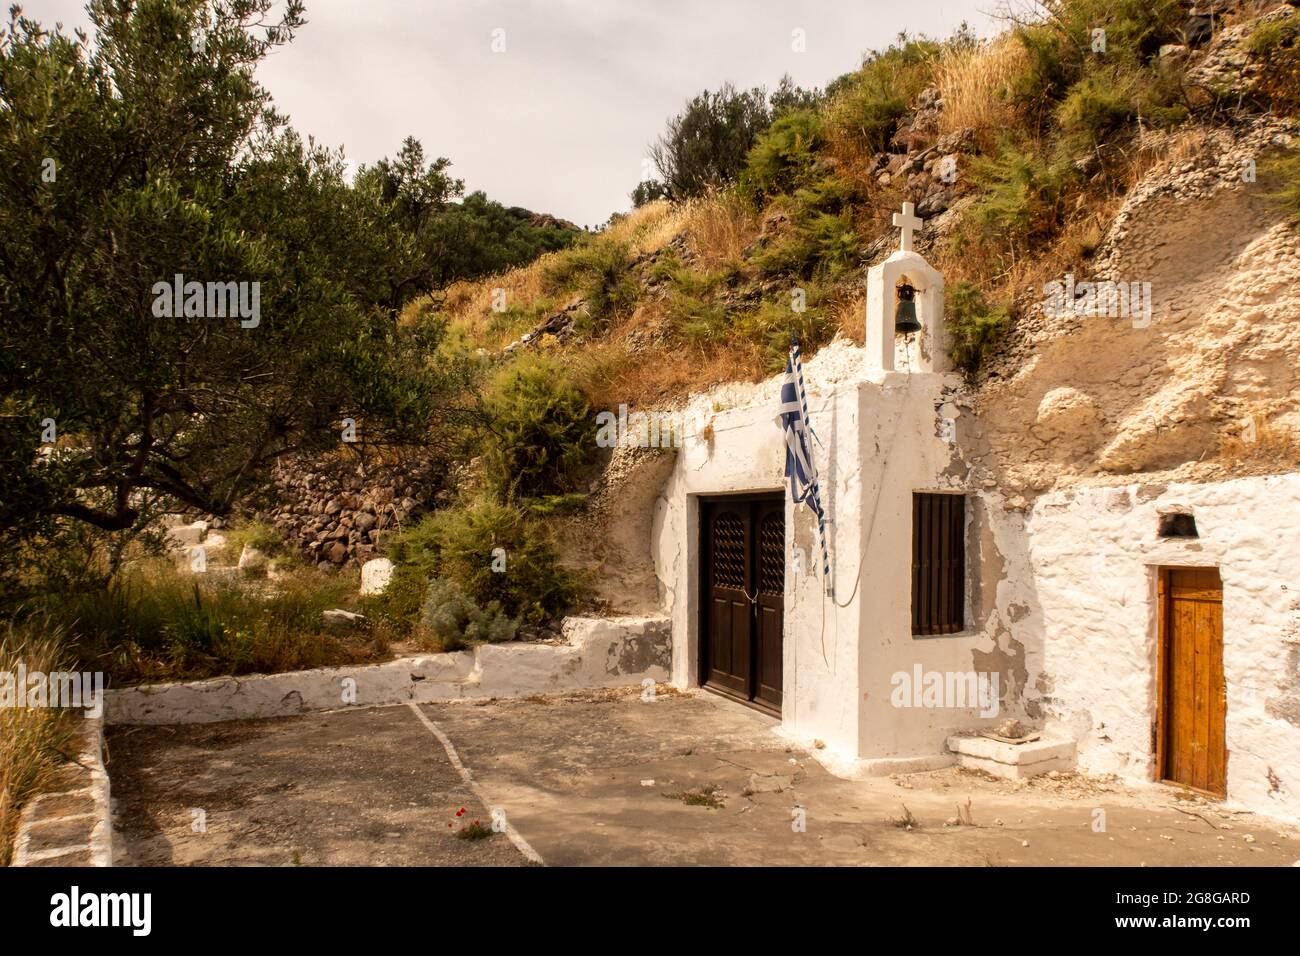 Ancienne petite église chrétienne blanchie à la chaux construite dans un rocher sur une colline sur l'île de Milos près de la ville de Trypiti avec des plantes vertes autour, Cyclades, Grèce. Banque D'Images